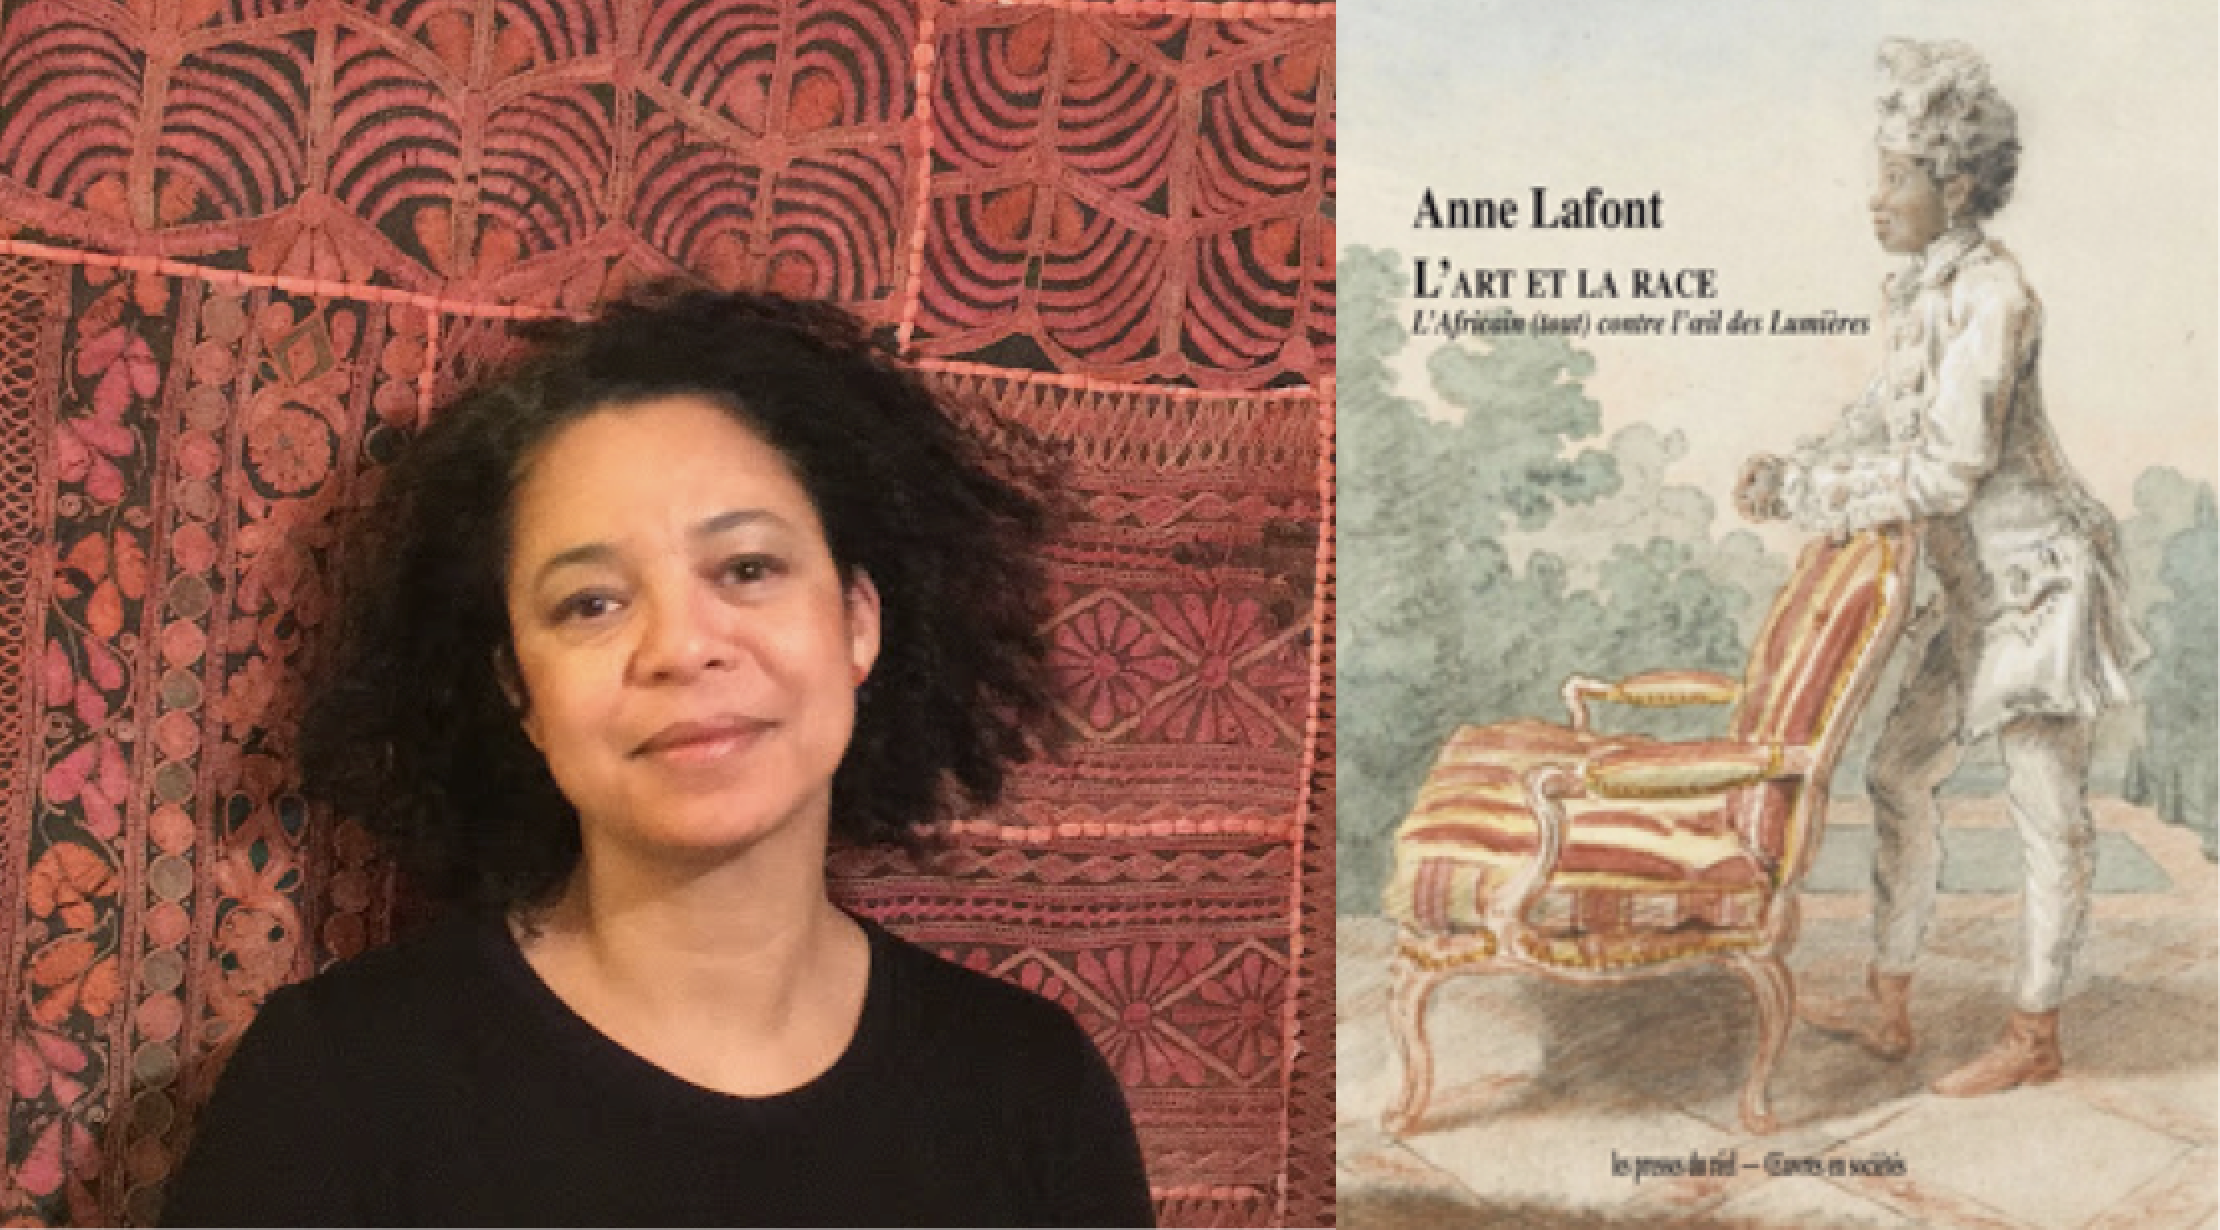 23 Octobre 2020: Attribution du prix Vitale et Arnold Blokh à Anne Lafont pour son ouvrage «L’Art et la Race. L’Africain (tout) contre l’œil des Lumières»